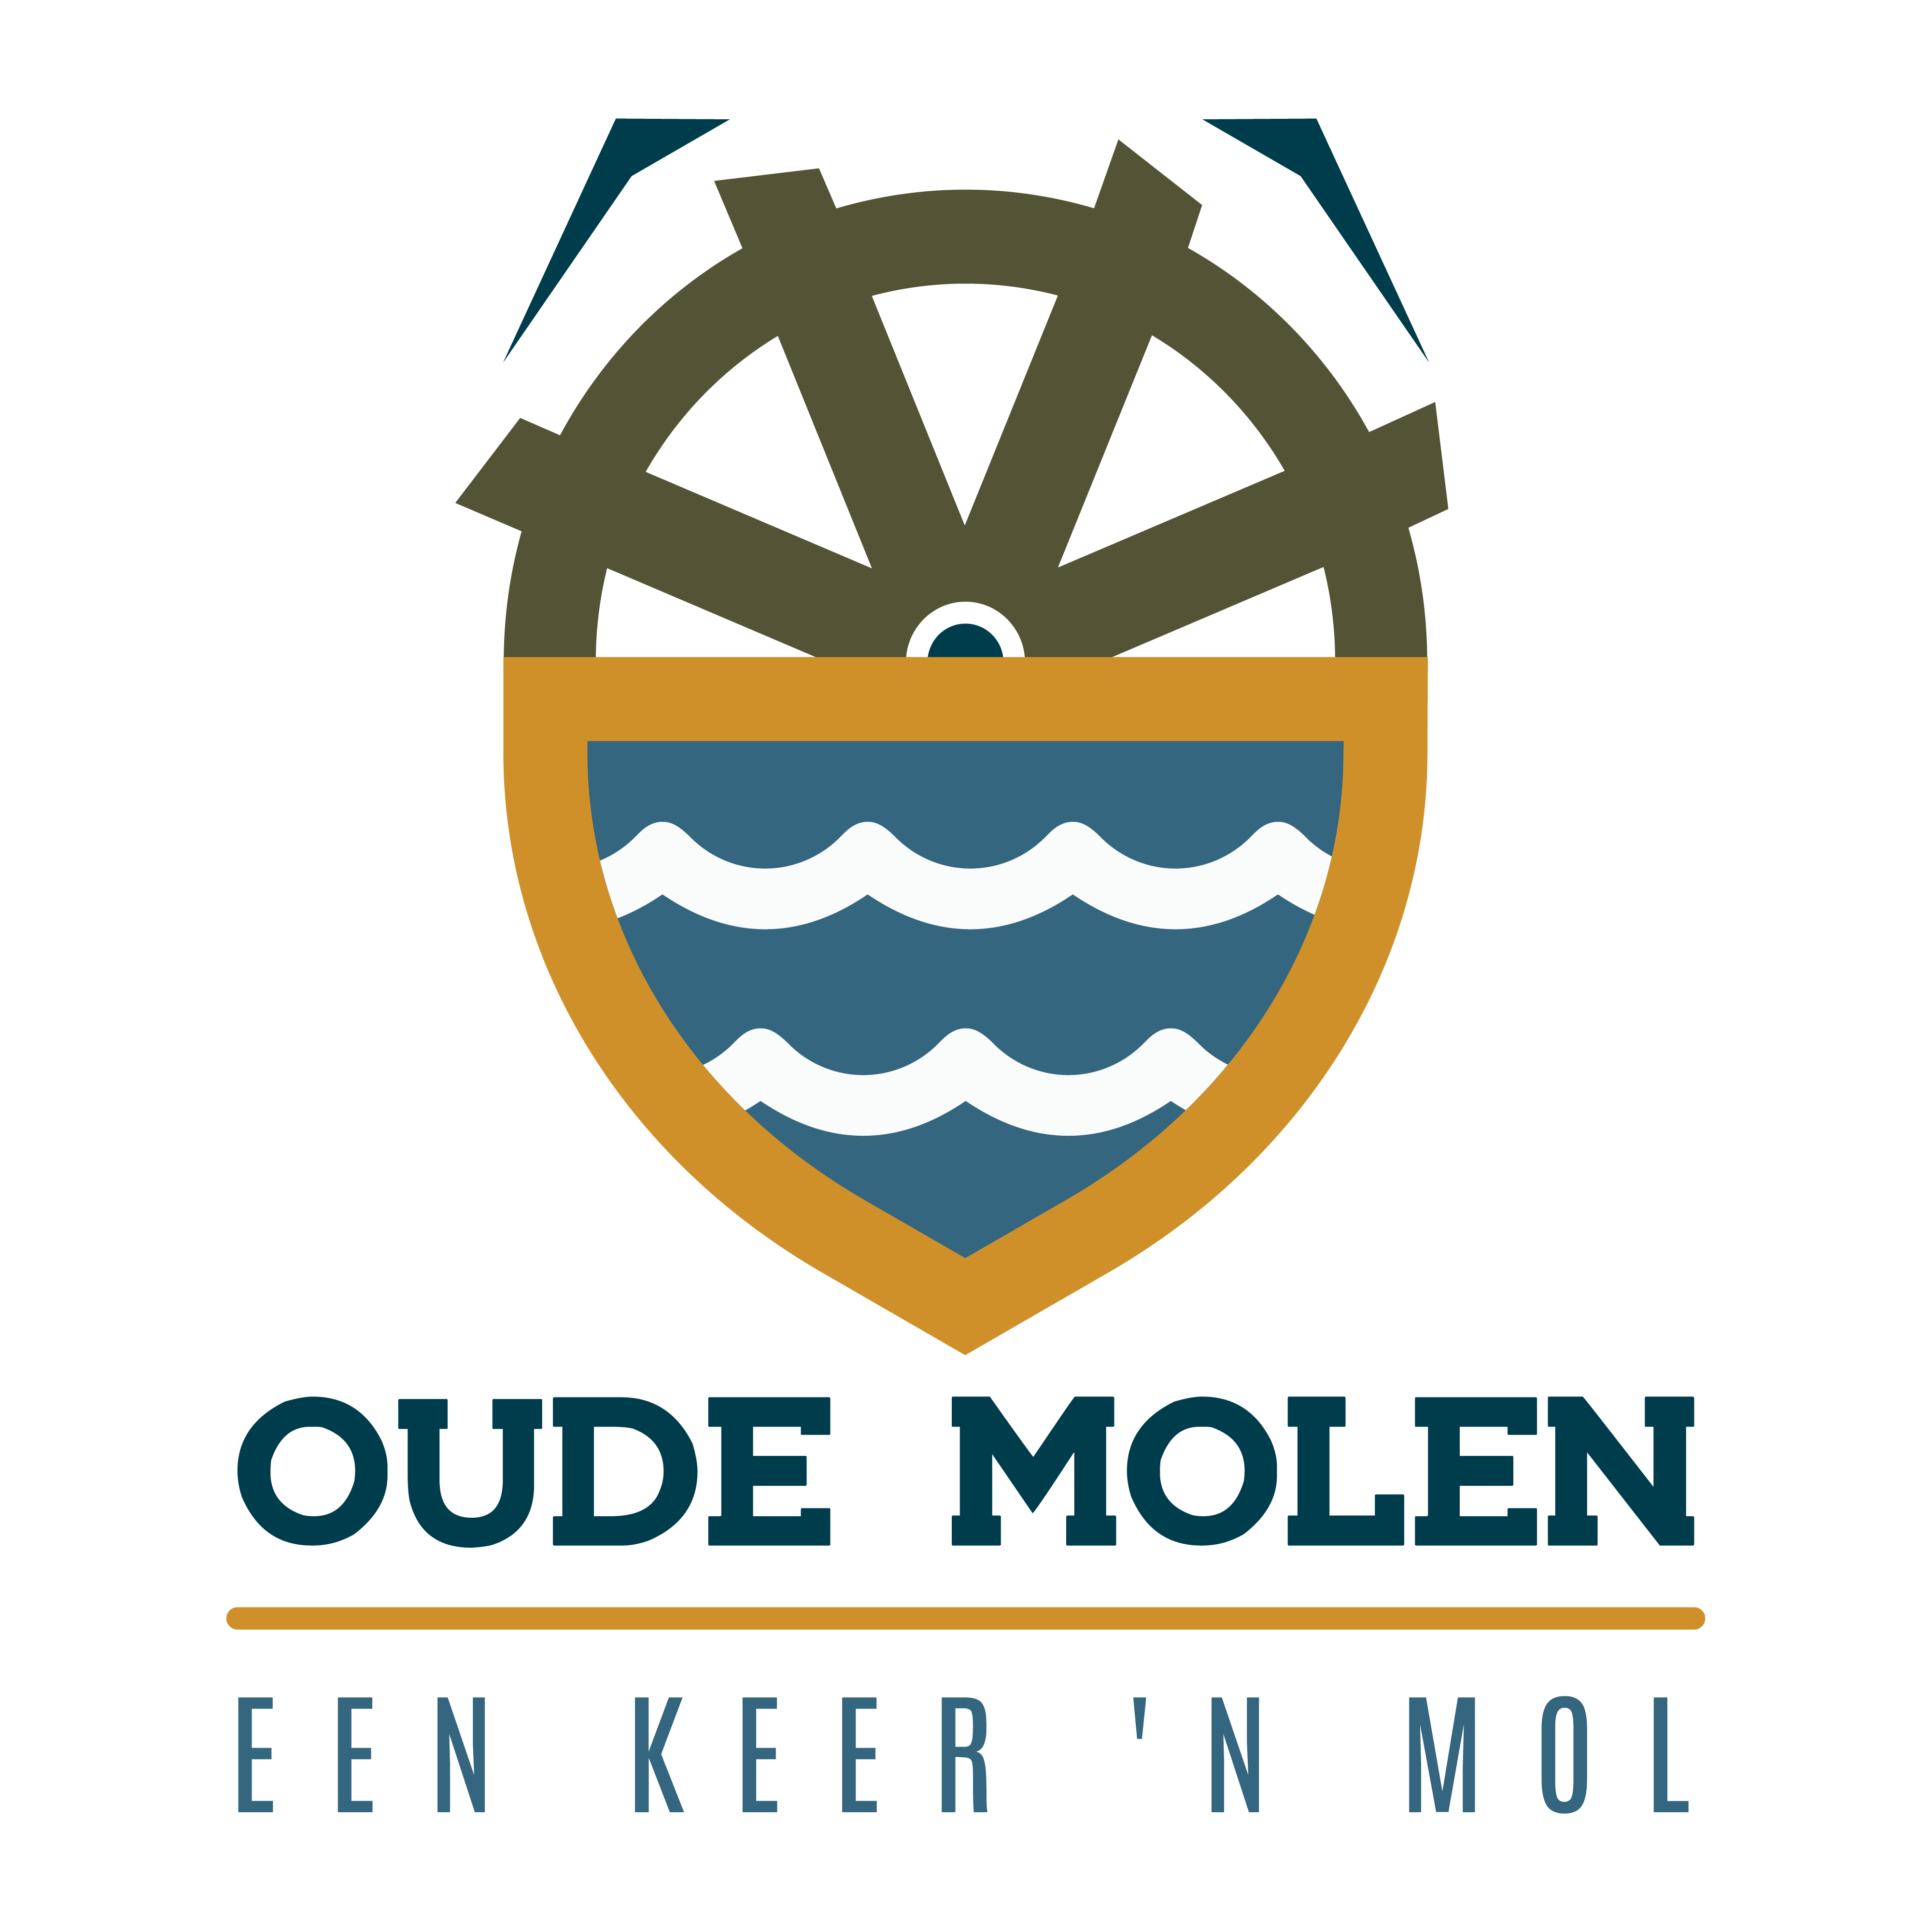 OudeMolen.png